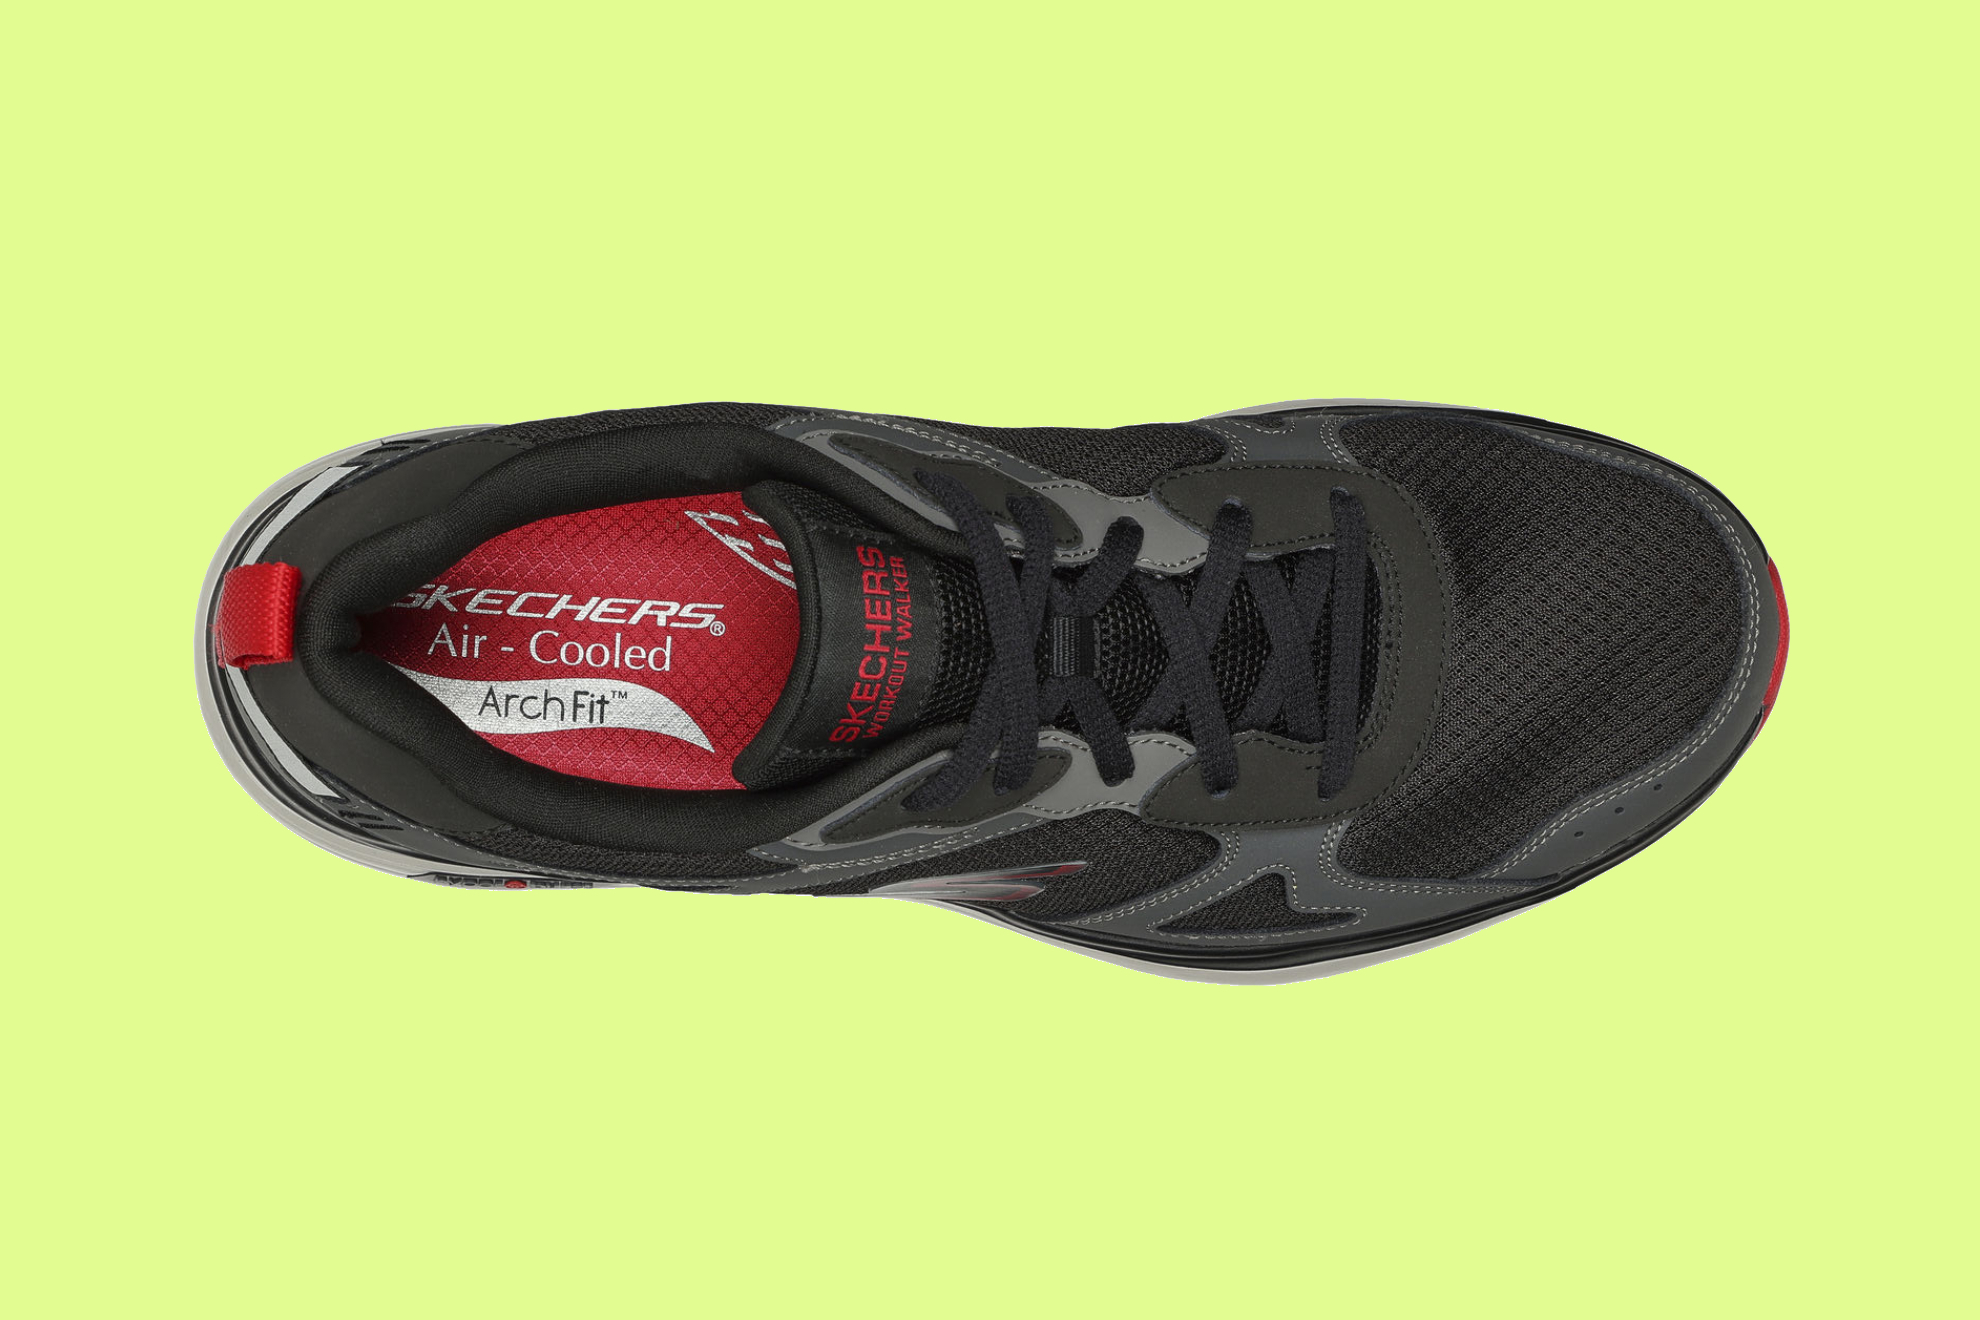 Probamos las nuevas Skechers Go Walk Workout Walker: de cómo unas zapatillas especialmente diseñadas para andar me curaron lesión de tobillo | Marca